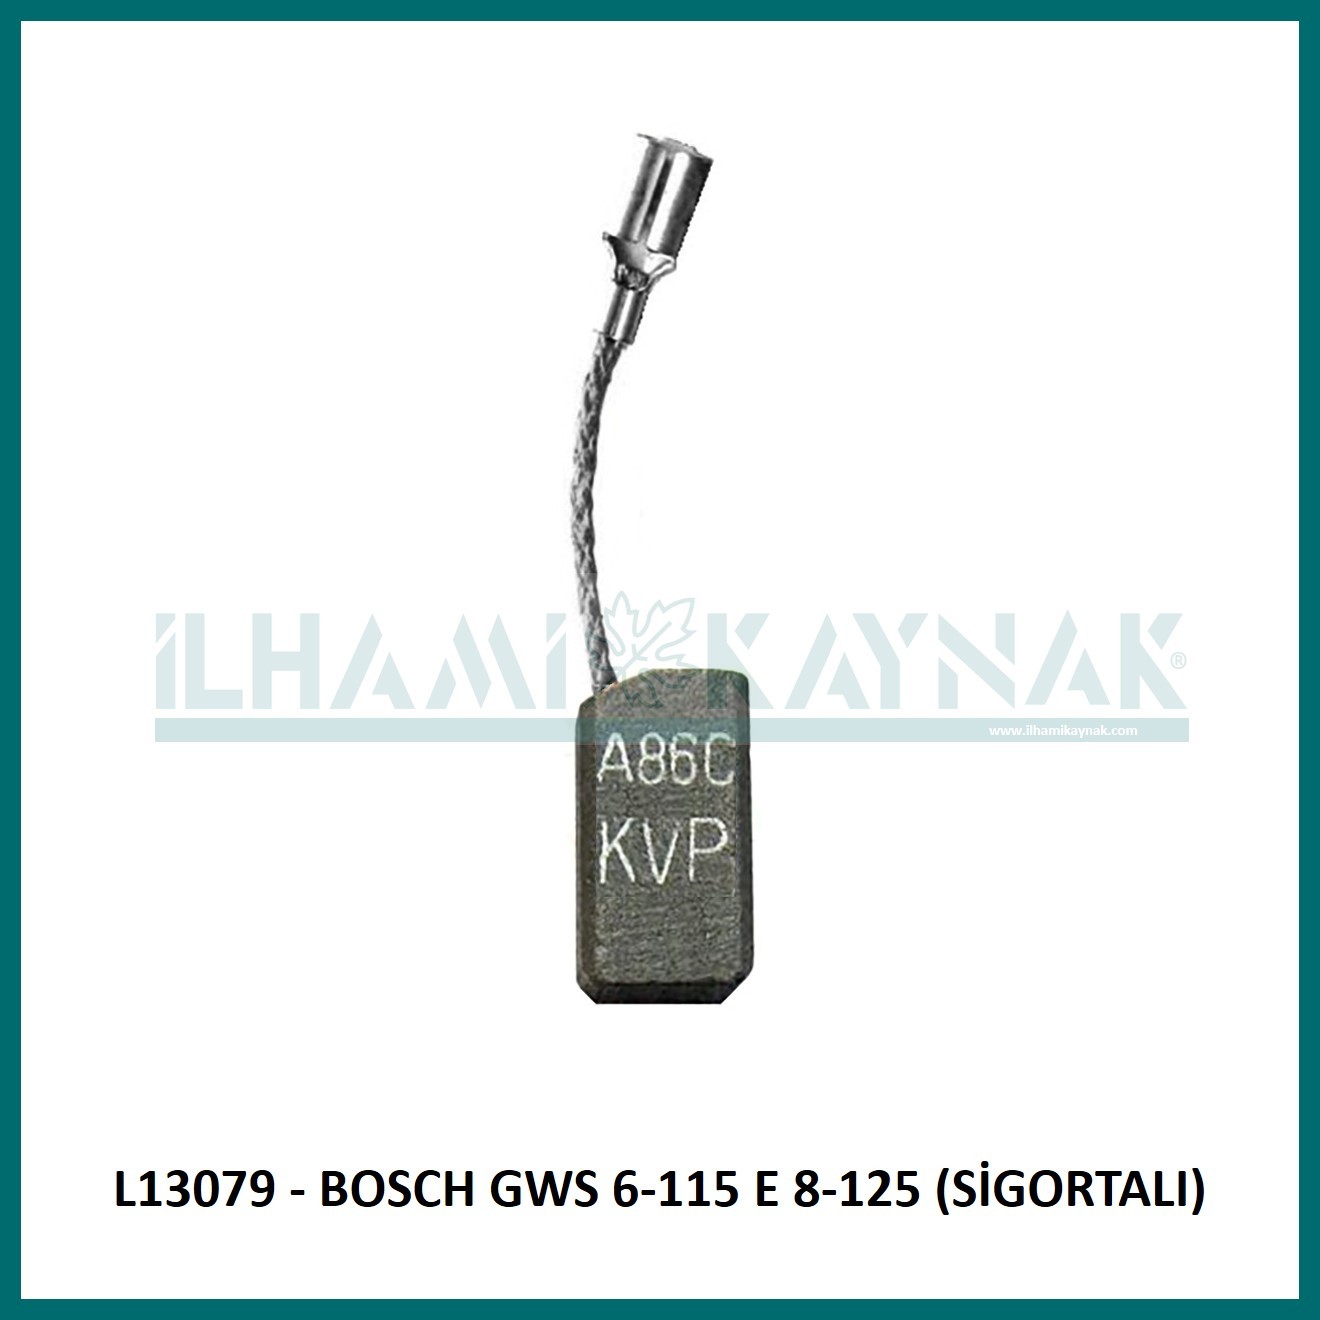 L13079 - BOSCH GWS 6-115 E 8-125 (SİGORTALI) Hilti - 5*8*15 mm - Minimum Satın Alım: 10 Adet.